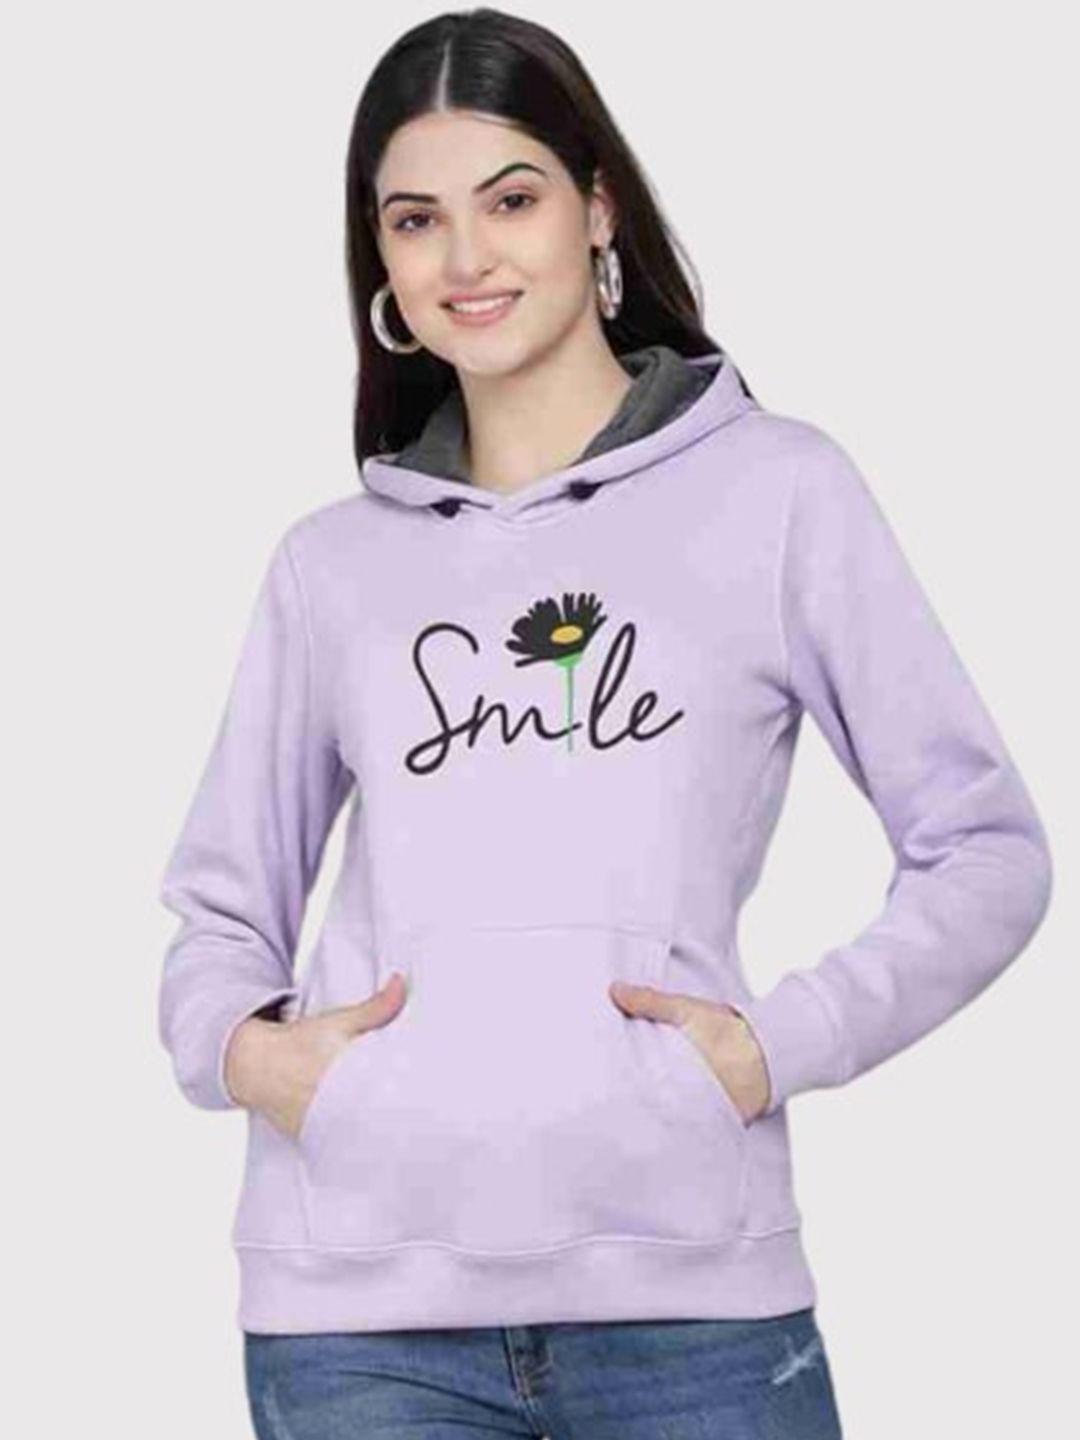 pockman women lavender printed hooded sweatshirt